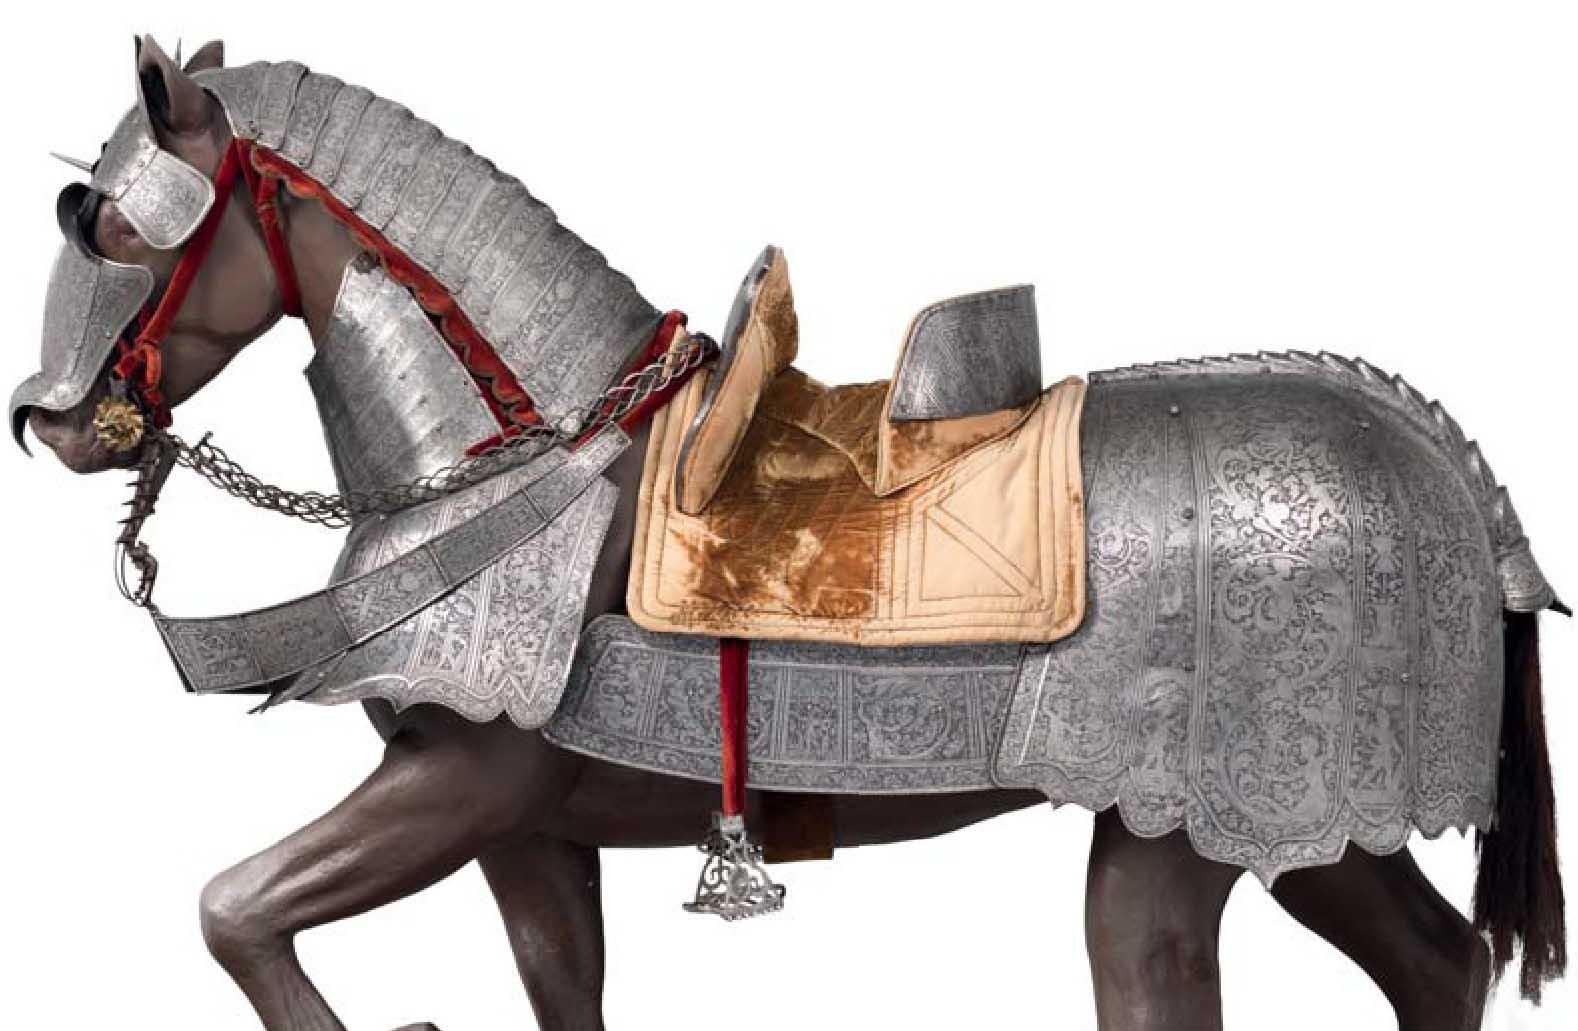 Металлические конские доспехи из Италии, вероятно, сделанные для лошади графа Антонио IV Коллальто. Конец XVI века. Музей Метрополитен, Нью-Йорк (США).